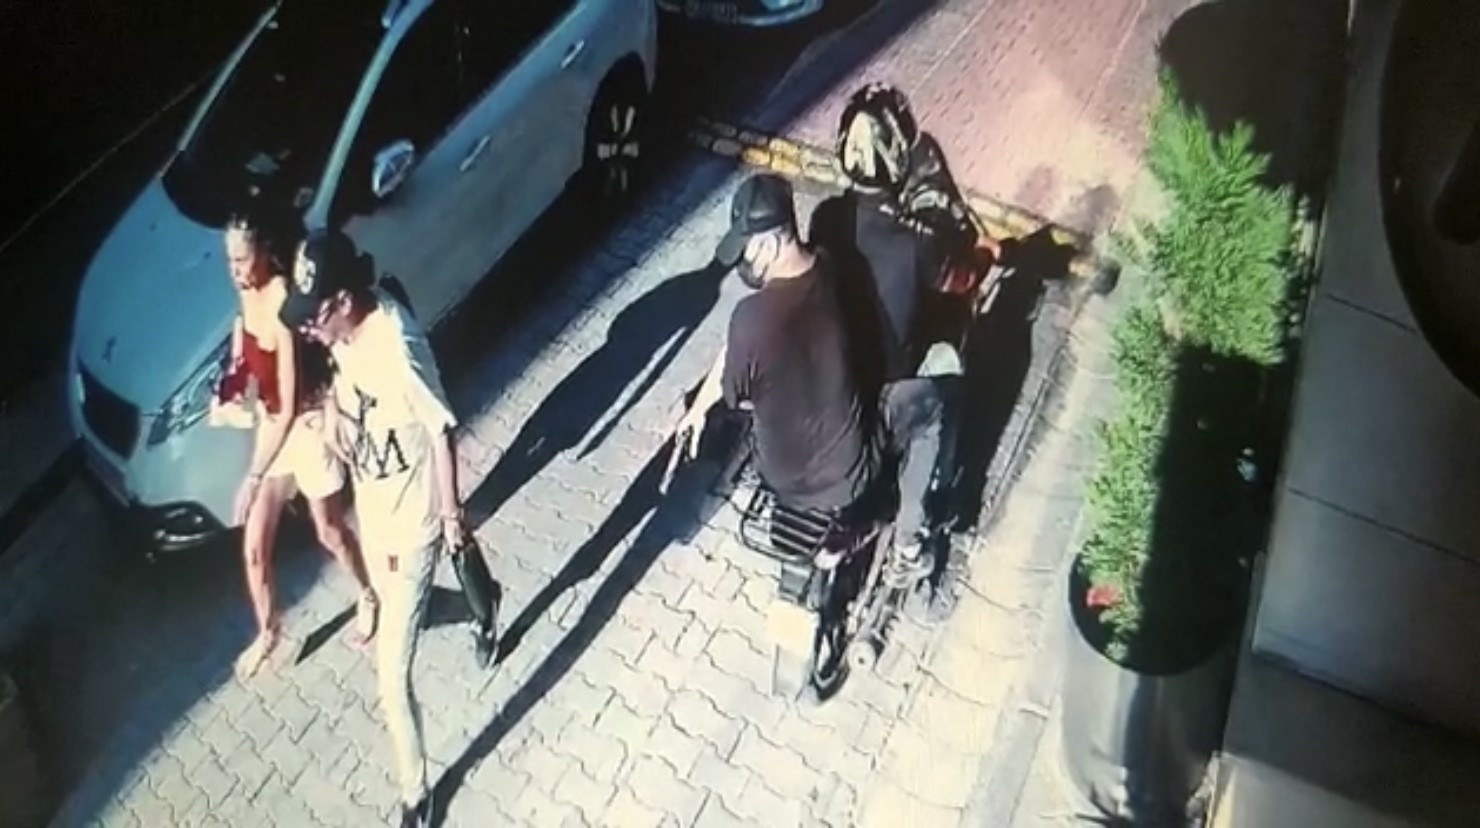 İstanbul’da sevgili çifte silahlı saldırı kamerada